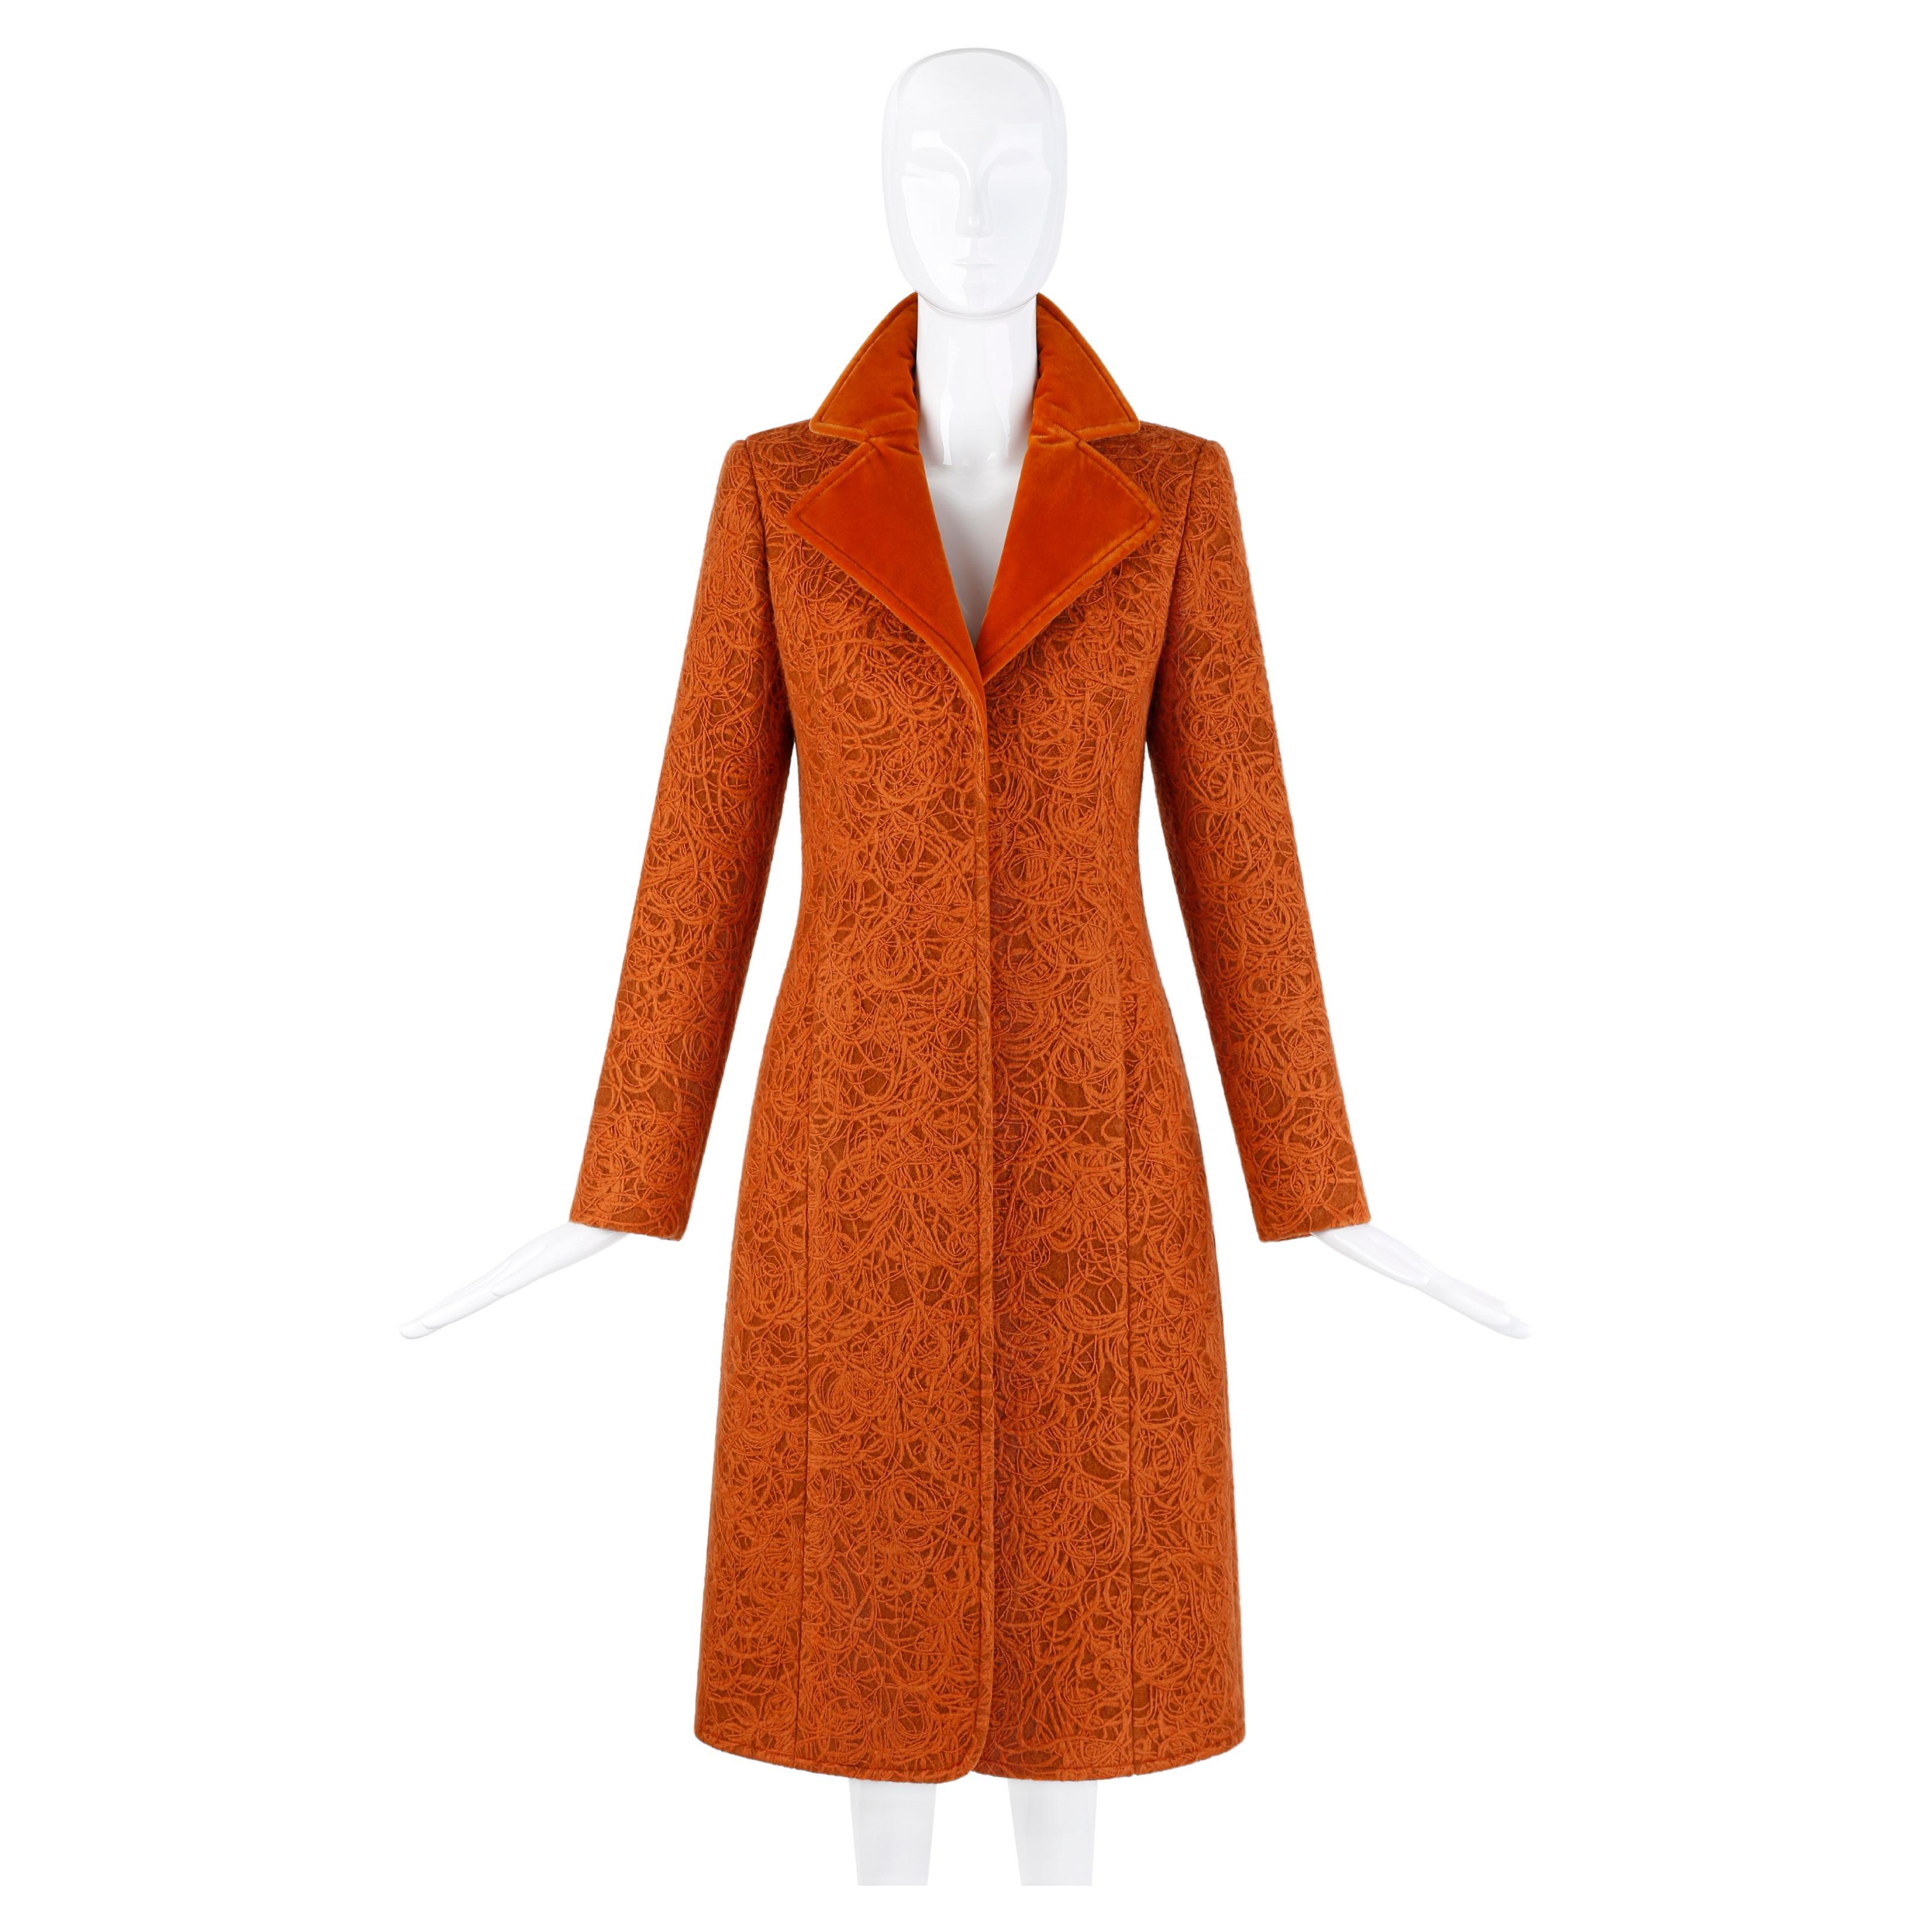 Alexander McQueen c.1996 Rust Orange Textured Wool Tailored Dress Jacket Coat  For Sale